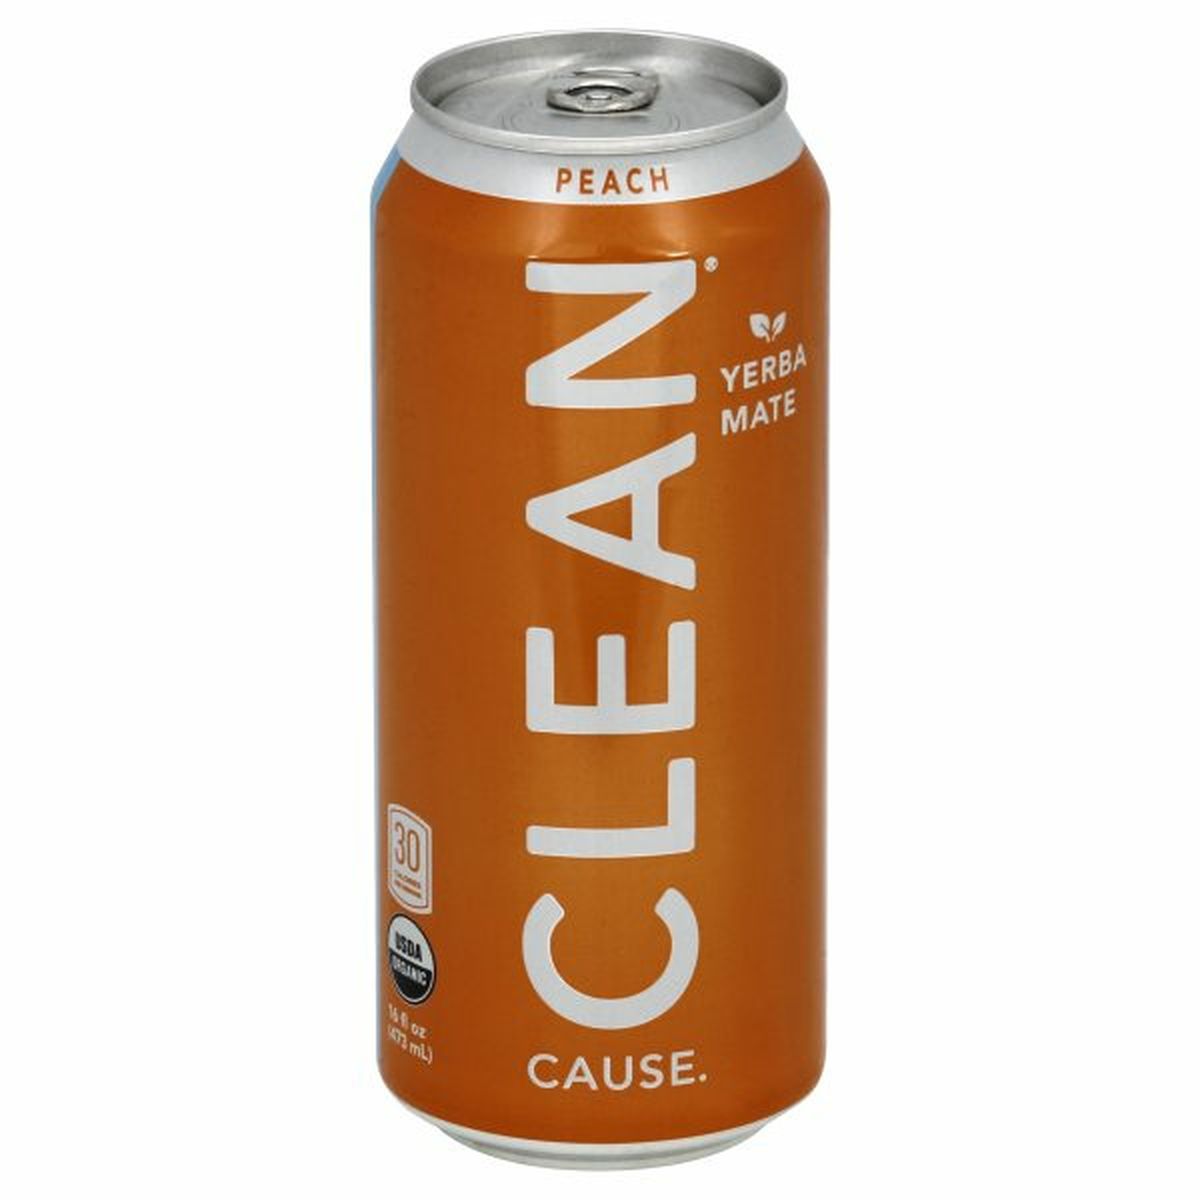 Calories in CLEAN Cause Yerba Mate, Organic, Peach